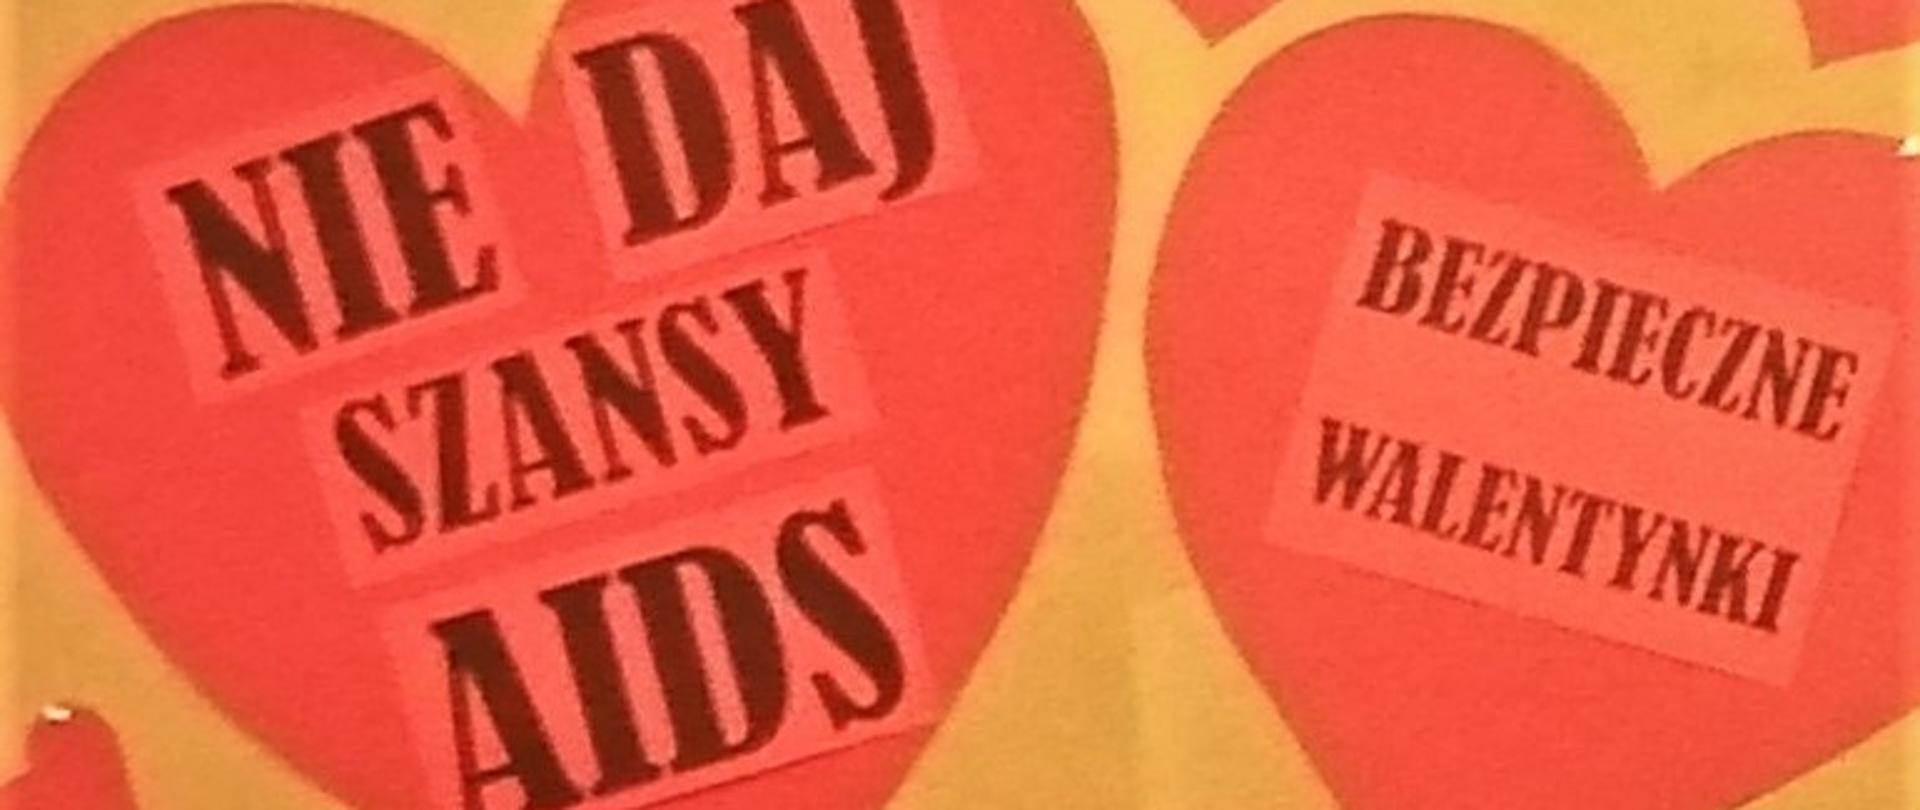 Dwa serca a na nich napisy: Nie daj szansy AIDS, Bezpieczne Walentynki